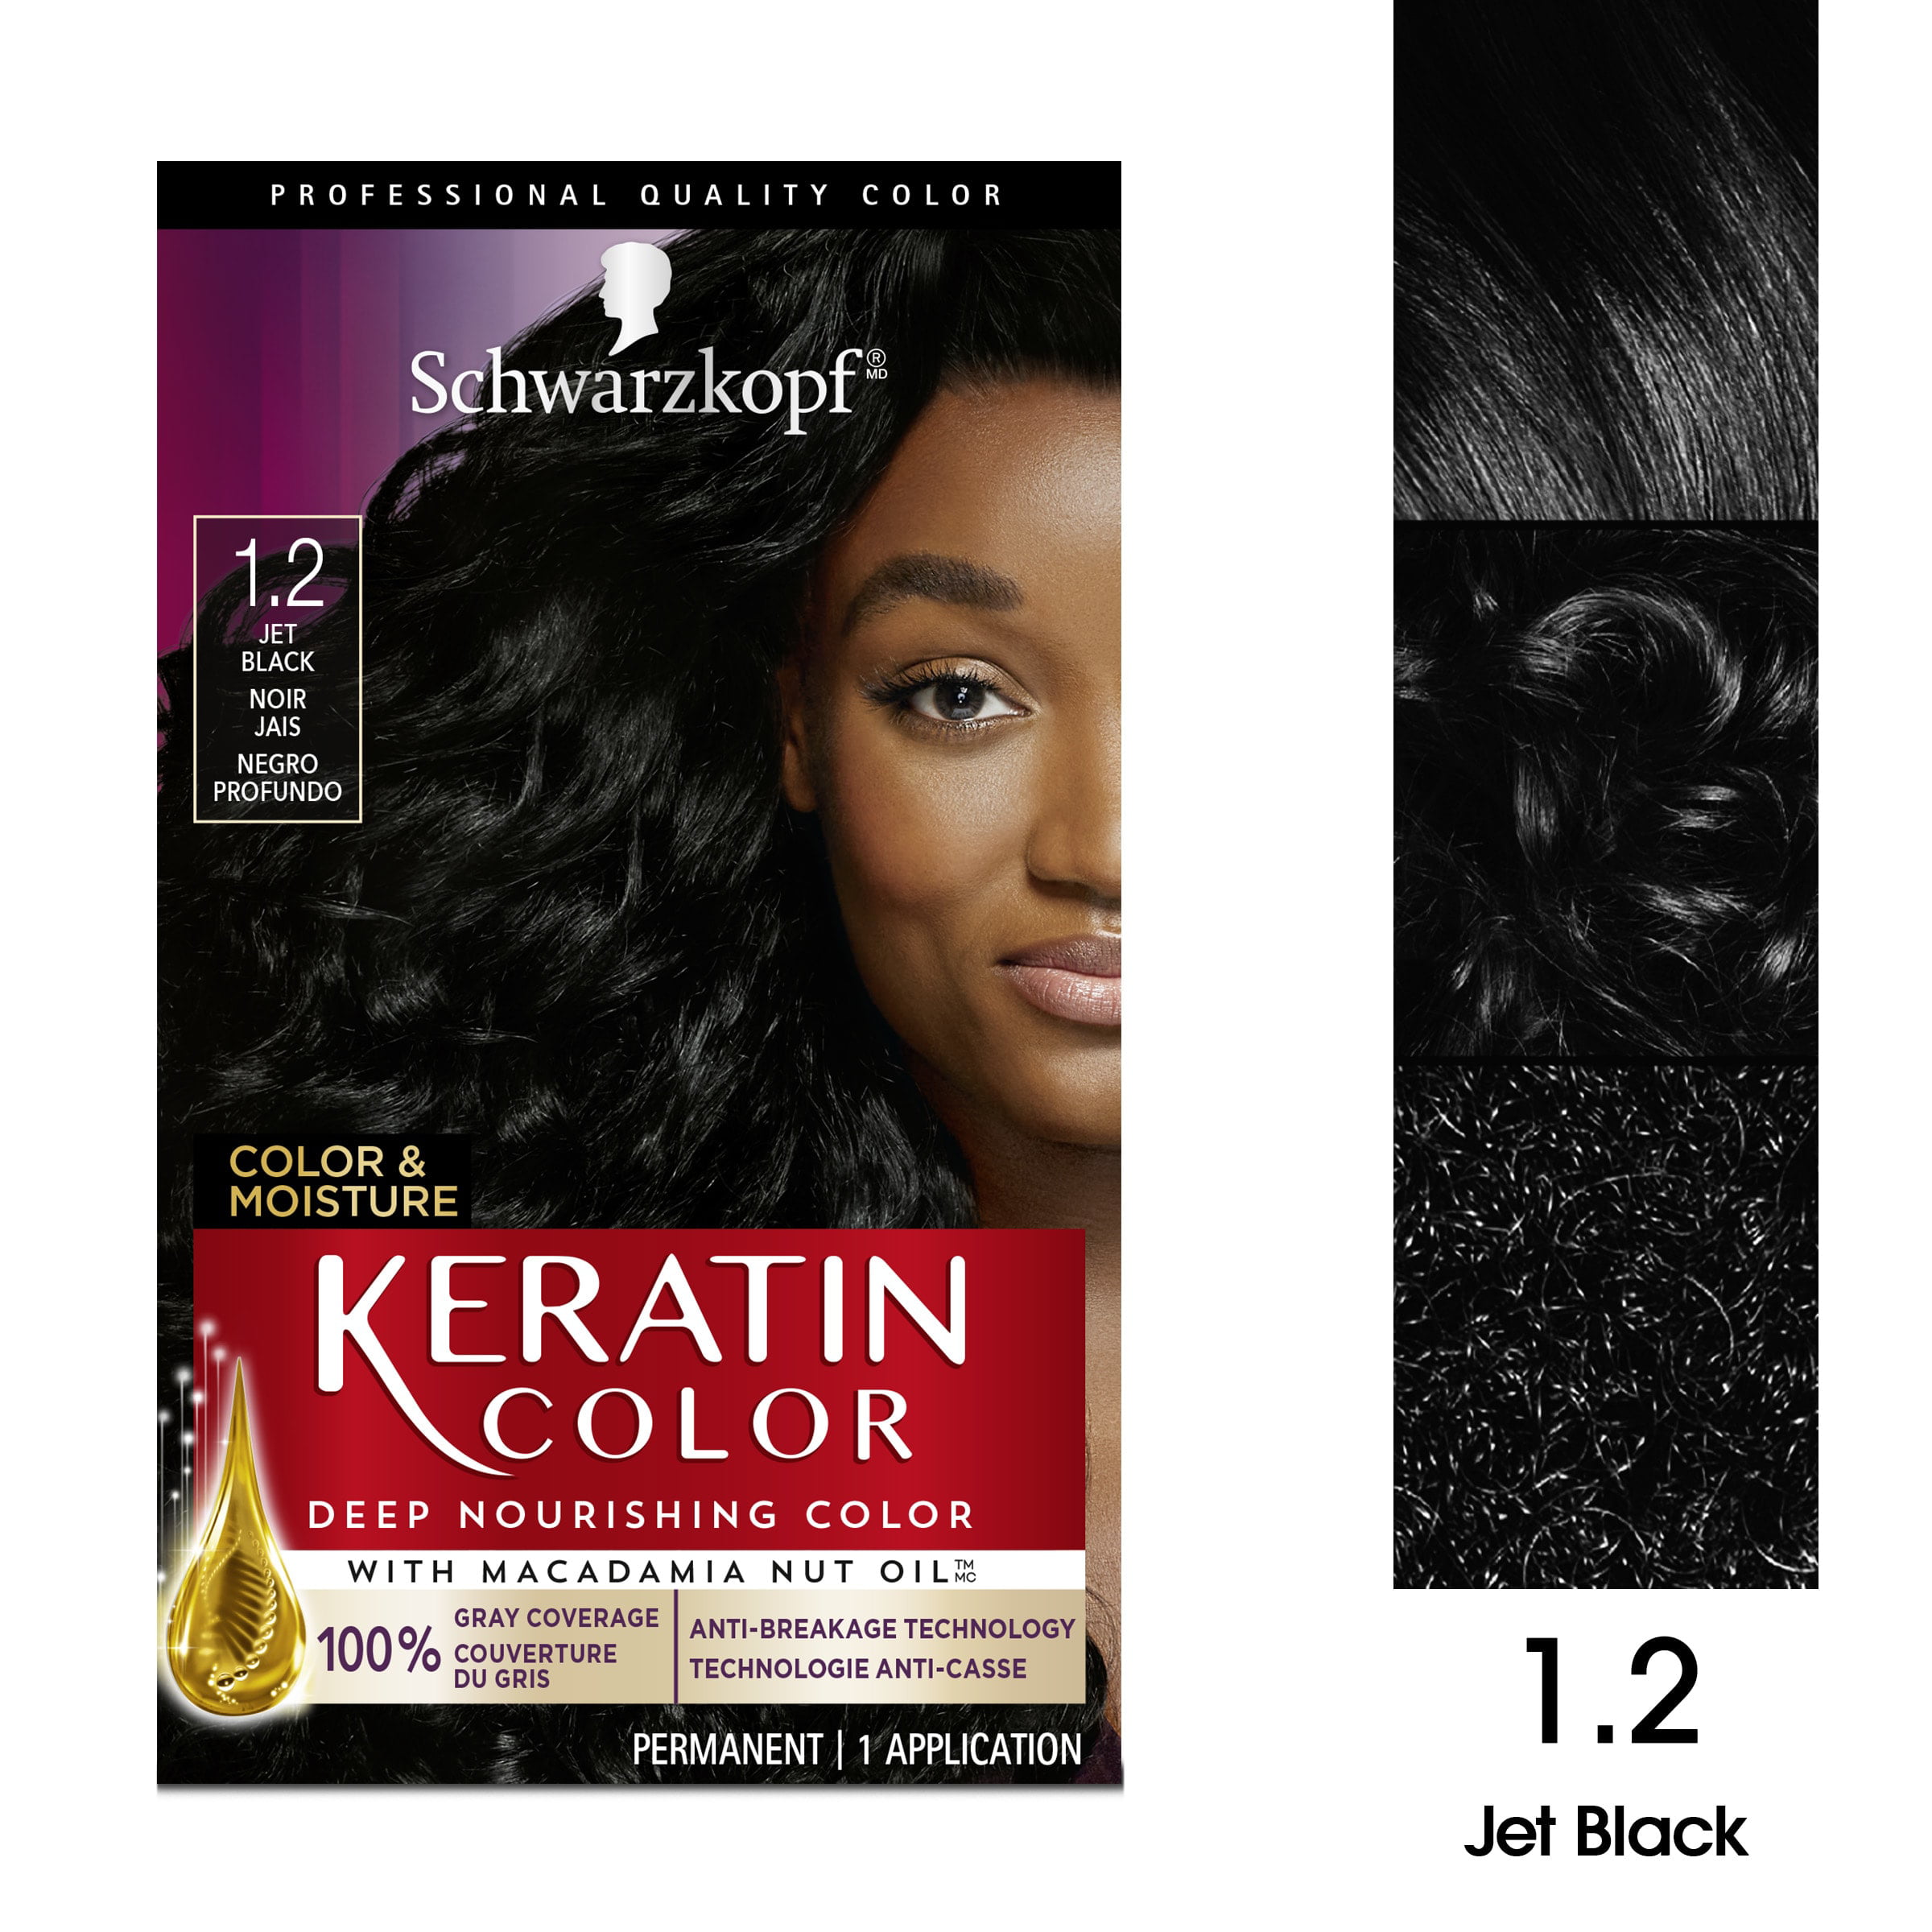 Schwarzkopf Keratin Color, Color & Moisture Permanent Hair Color Cream, 1.2 Jet Black